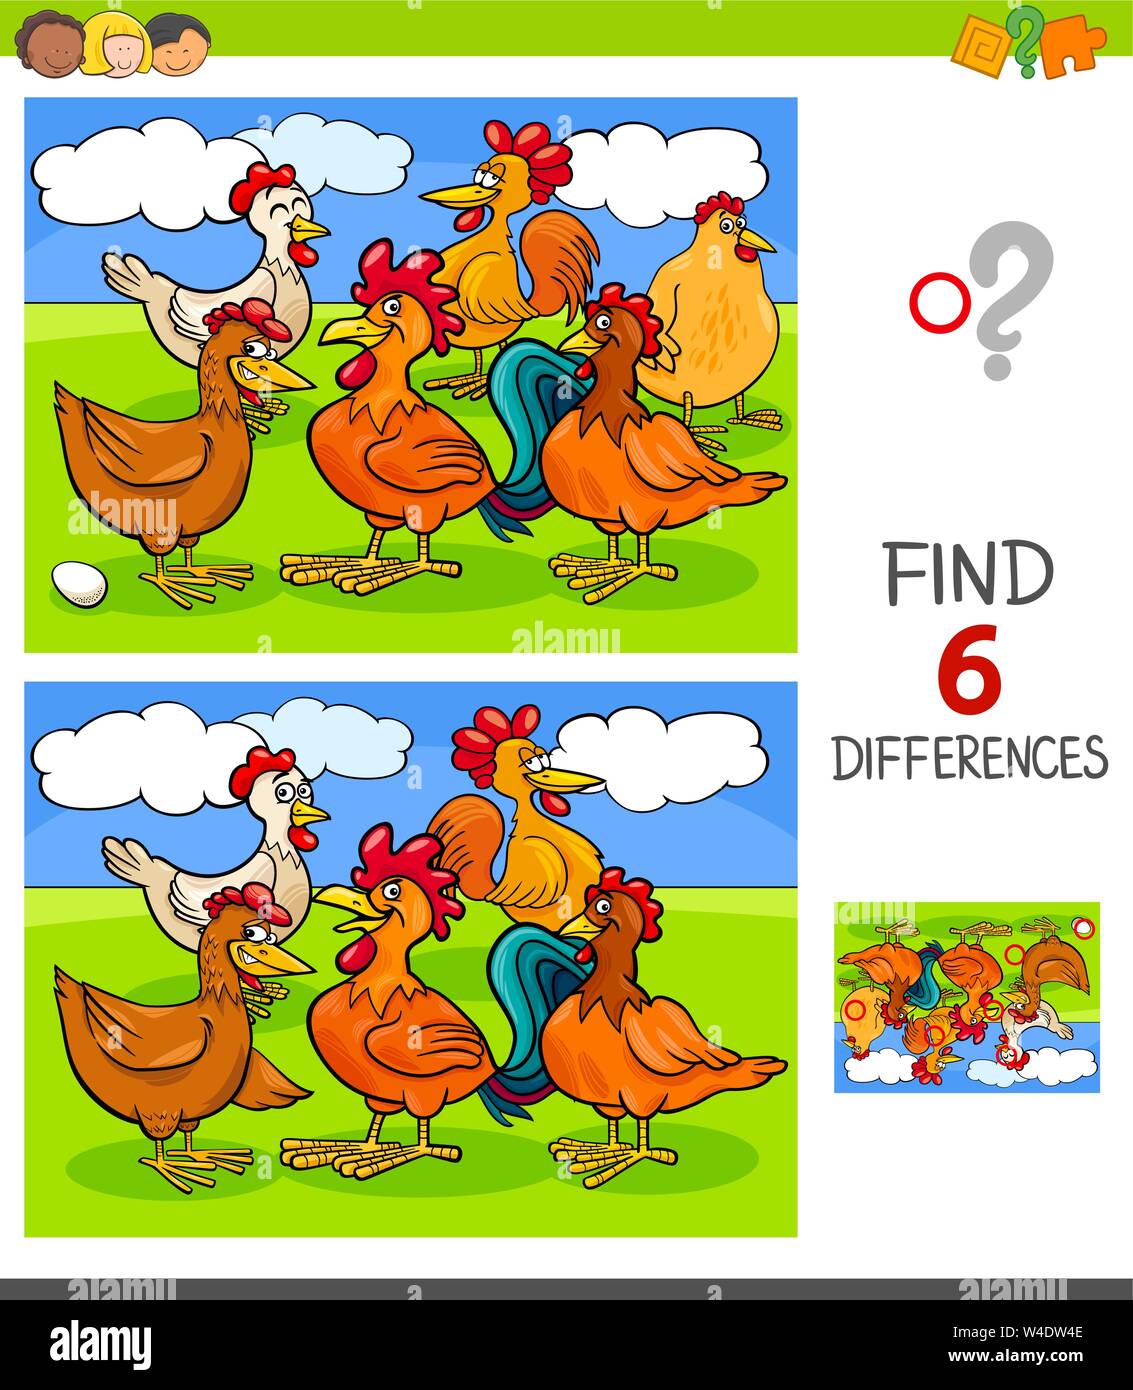 Ilustración de dibujos animados de encontrar seis diferencias entre las  imágenes de juegos educativos para niños con gallinas y gallos personajes  animales de granja Imagen Vector de stock - Alamy